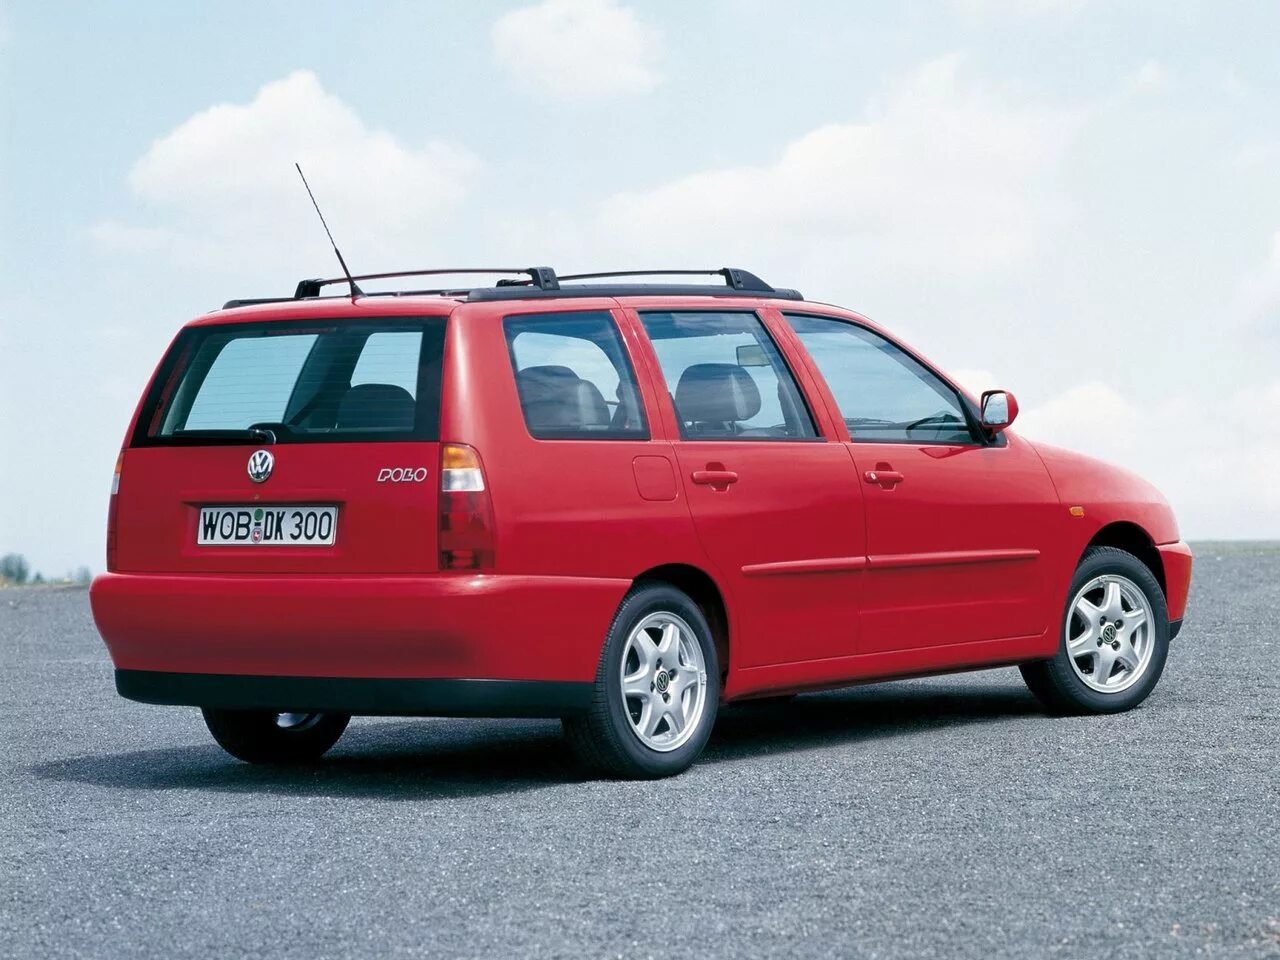 Фольксваген поло универсал 2000. Volkswagen Polo 2000 универсал. Volkswagen Polo 3 универсал. Фольксваген поло универсал 1997.